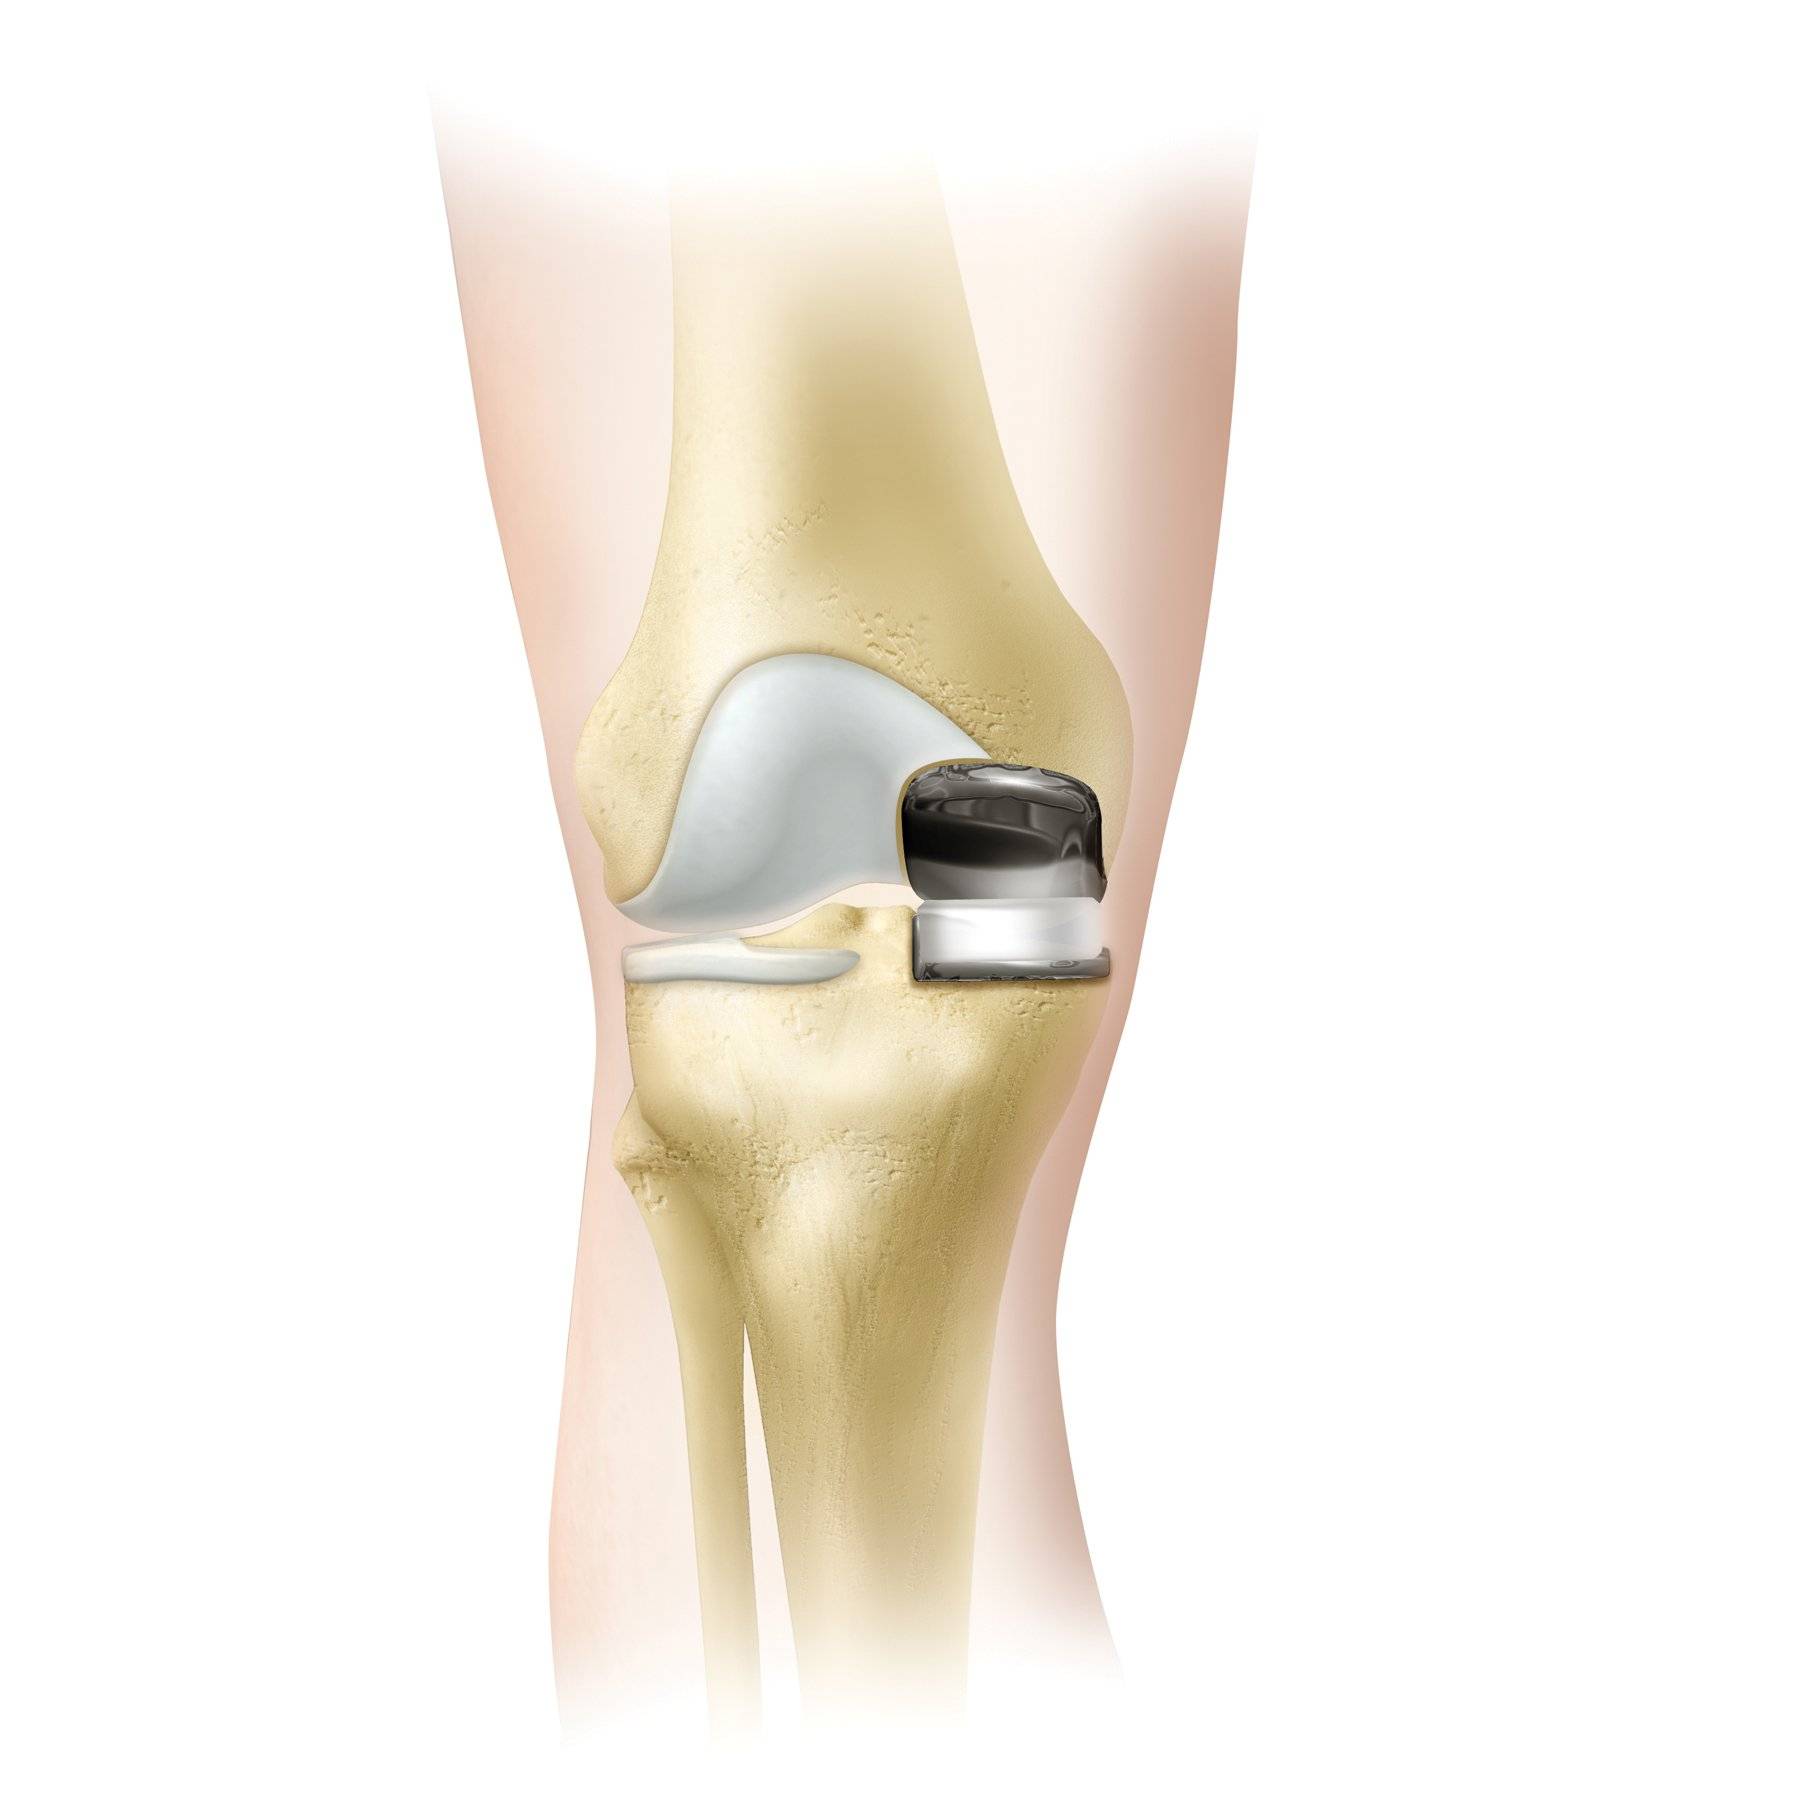 Операции на коленном суставе стоимость. Коленный эндопротез Зиммер. Эндопротез коленного сустава. Эндопротез Зиммер коленного сустава. Артропластика коленного сустава.